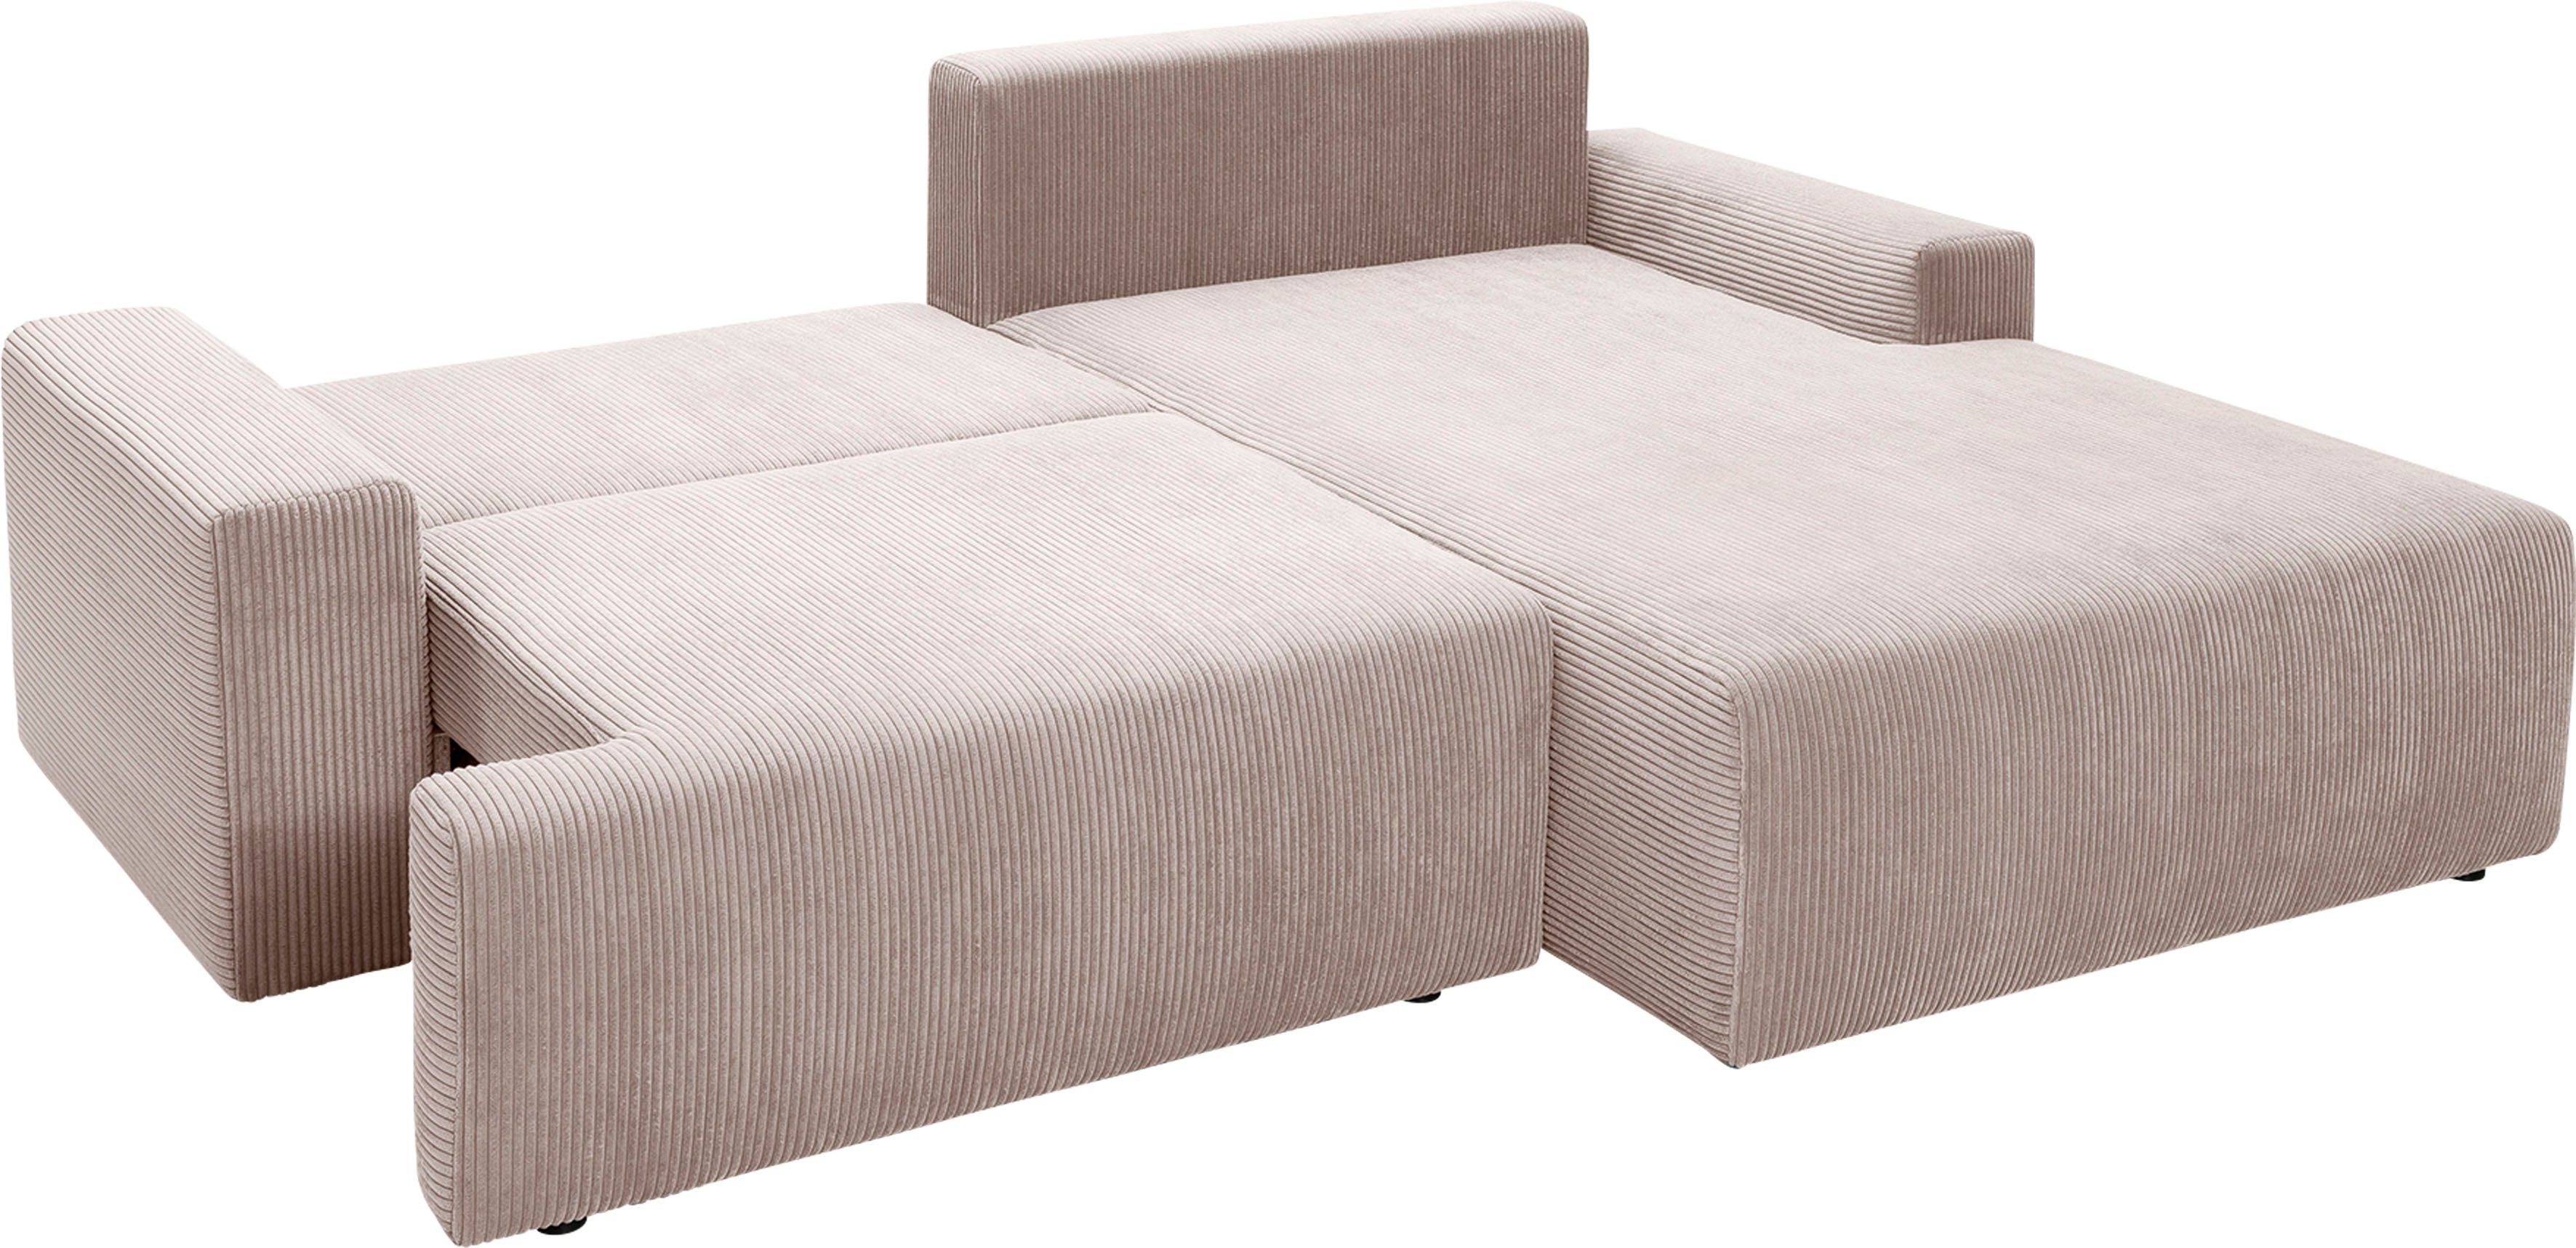 Ecksofa exxpo - in Orinoko, und Cord-Farben biege Bettkasten verschiedenen sofa inklusive Bettfunktion fashion